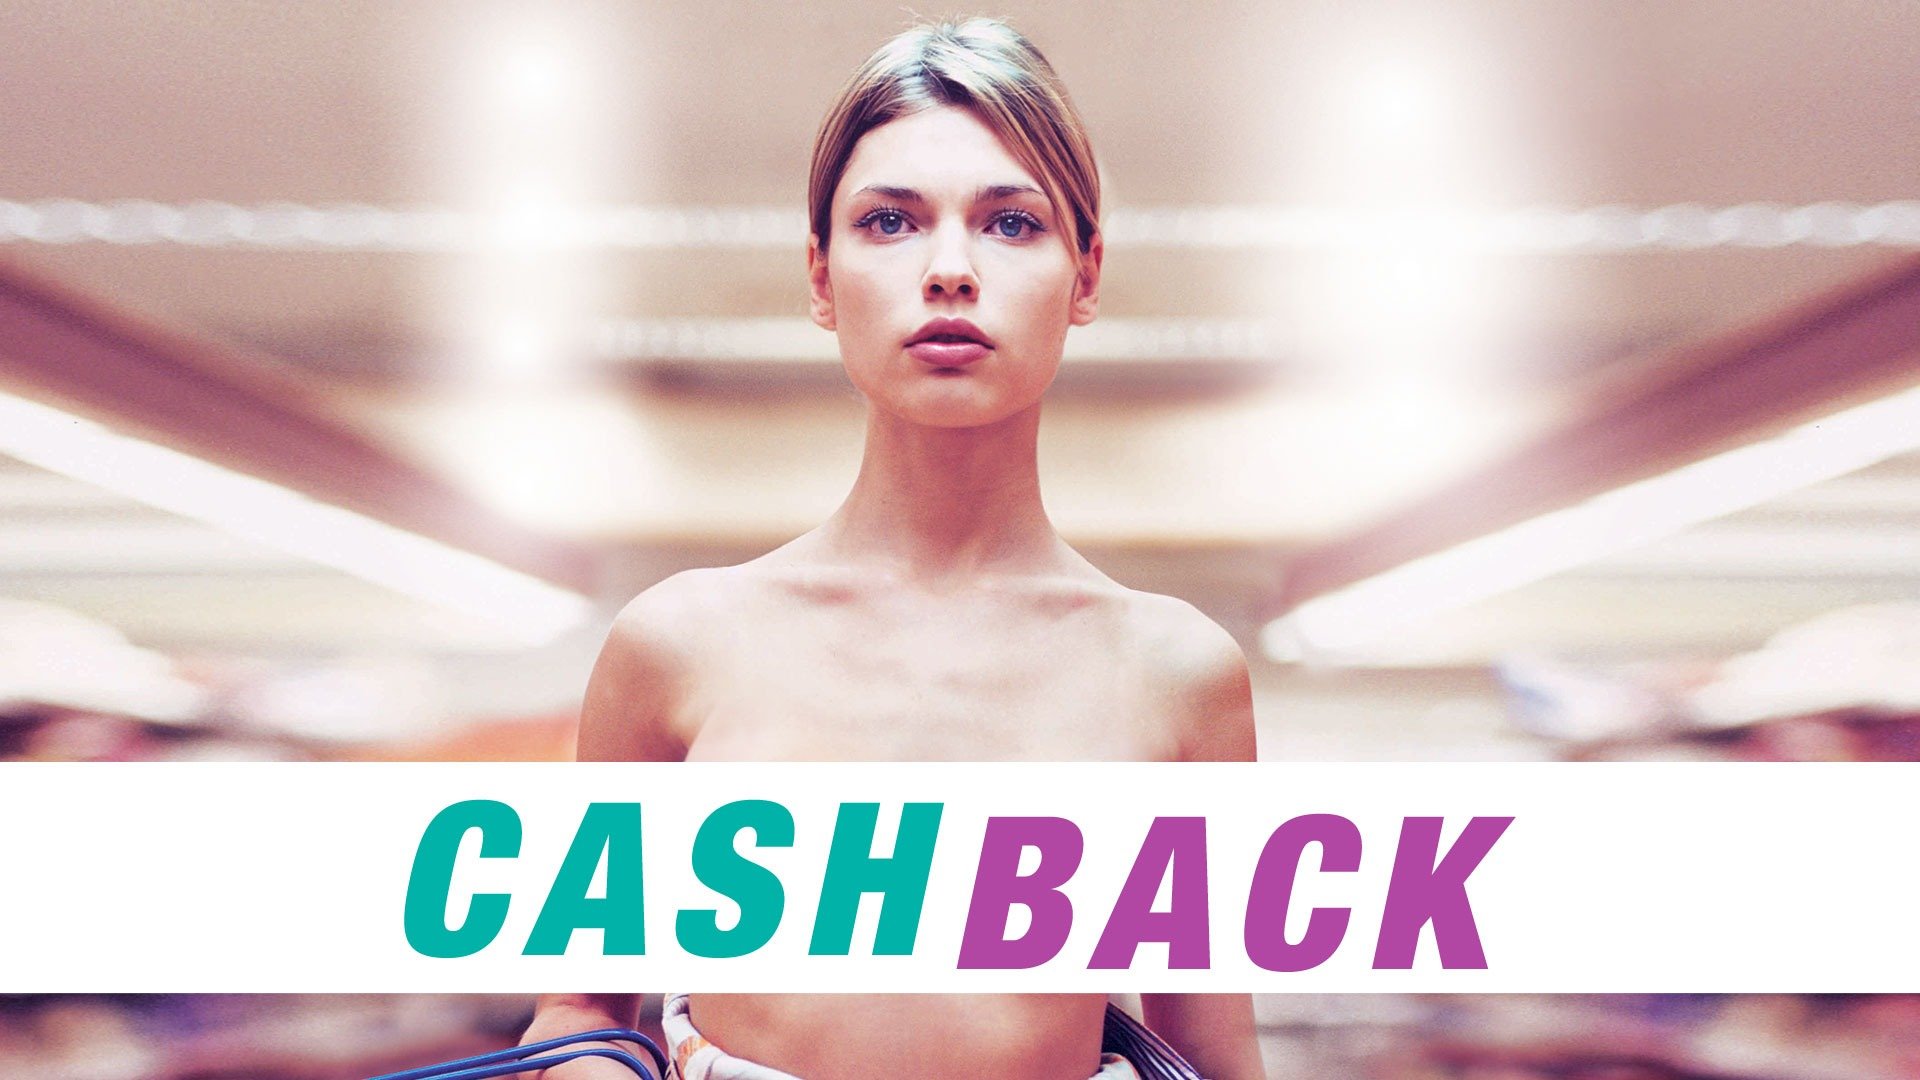 Cashback (2006) - Plot - IMDb